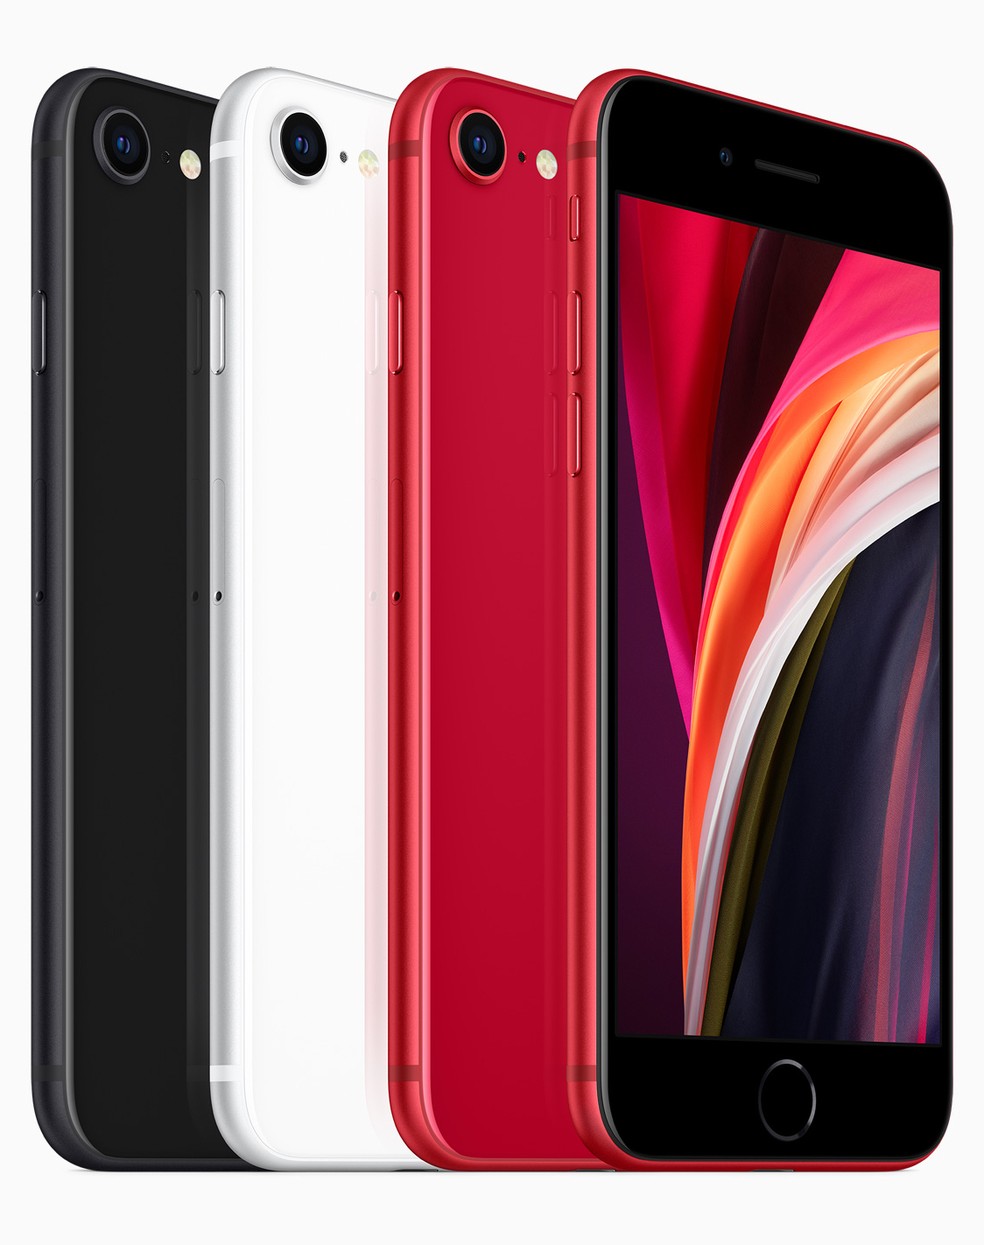 iPhone SE 2 é vendido nas cores preto, branco e vermelho (parte da iniciativa Red) — Foto: Divulgação/Apple